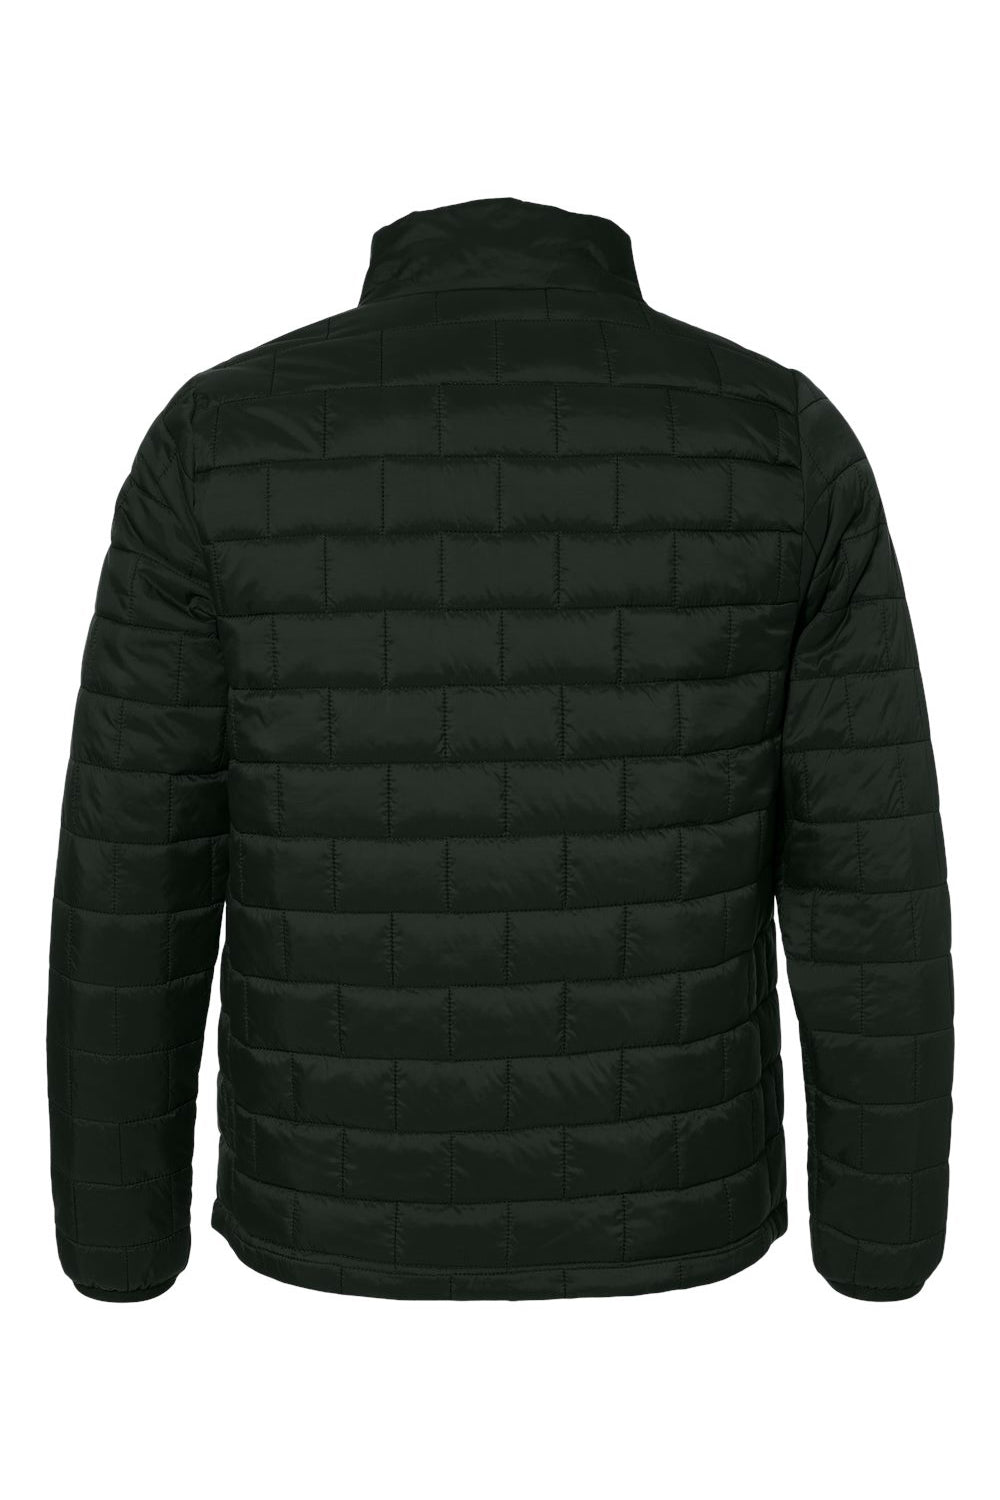 Burnside 8713 Mens Element Full Zip Puffer Jacket Black Flat Back